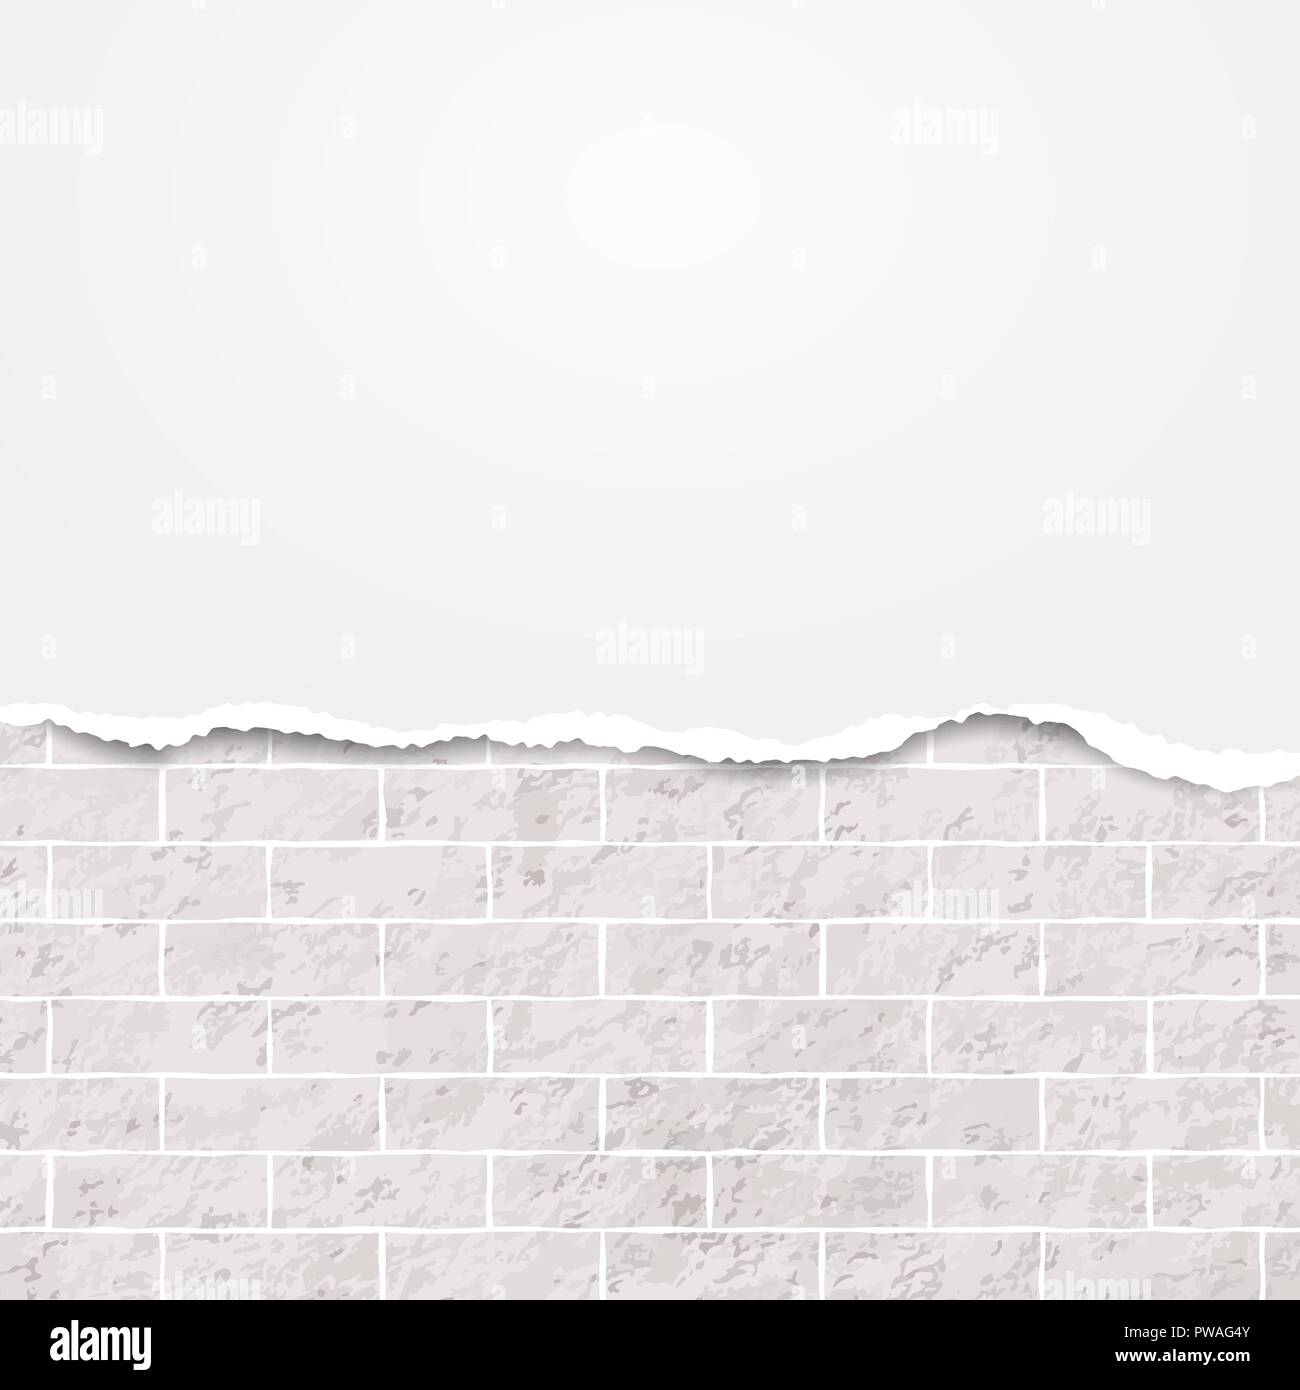 Bianco di carta strappata striscia per testo o messaggio bianco su sfondo mattone. Illustrazione Vettoriale. Illustrazione Vettoriale